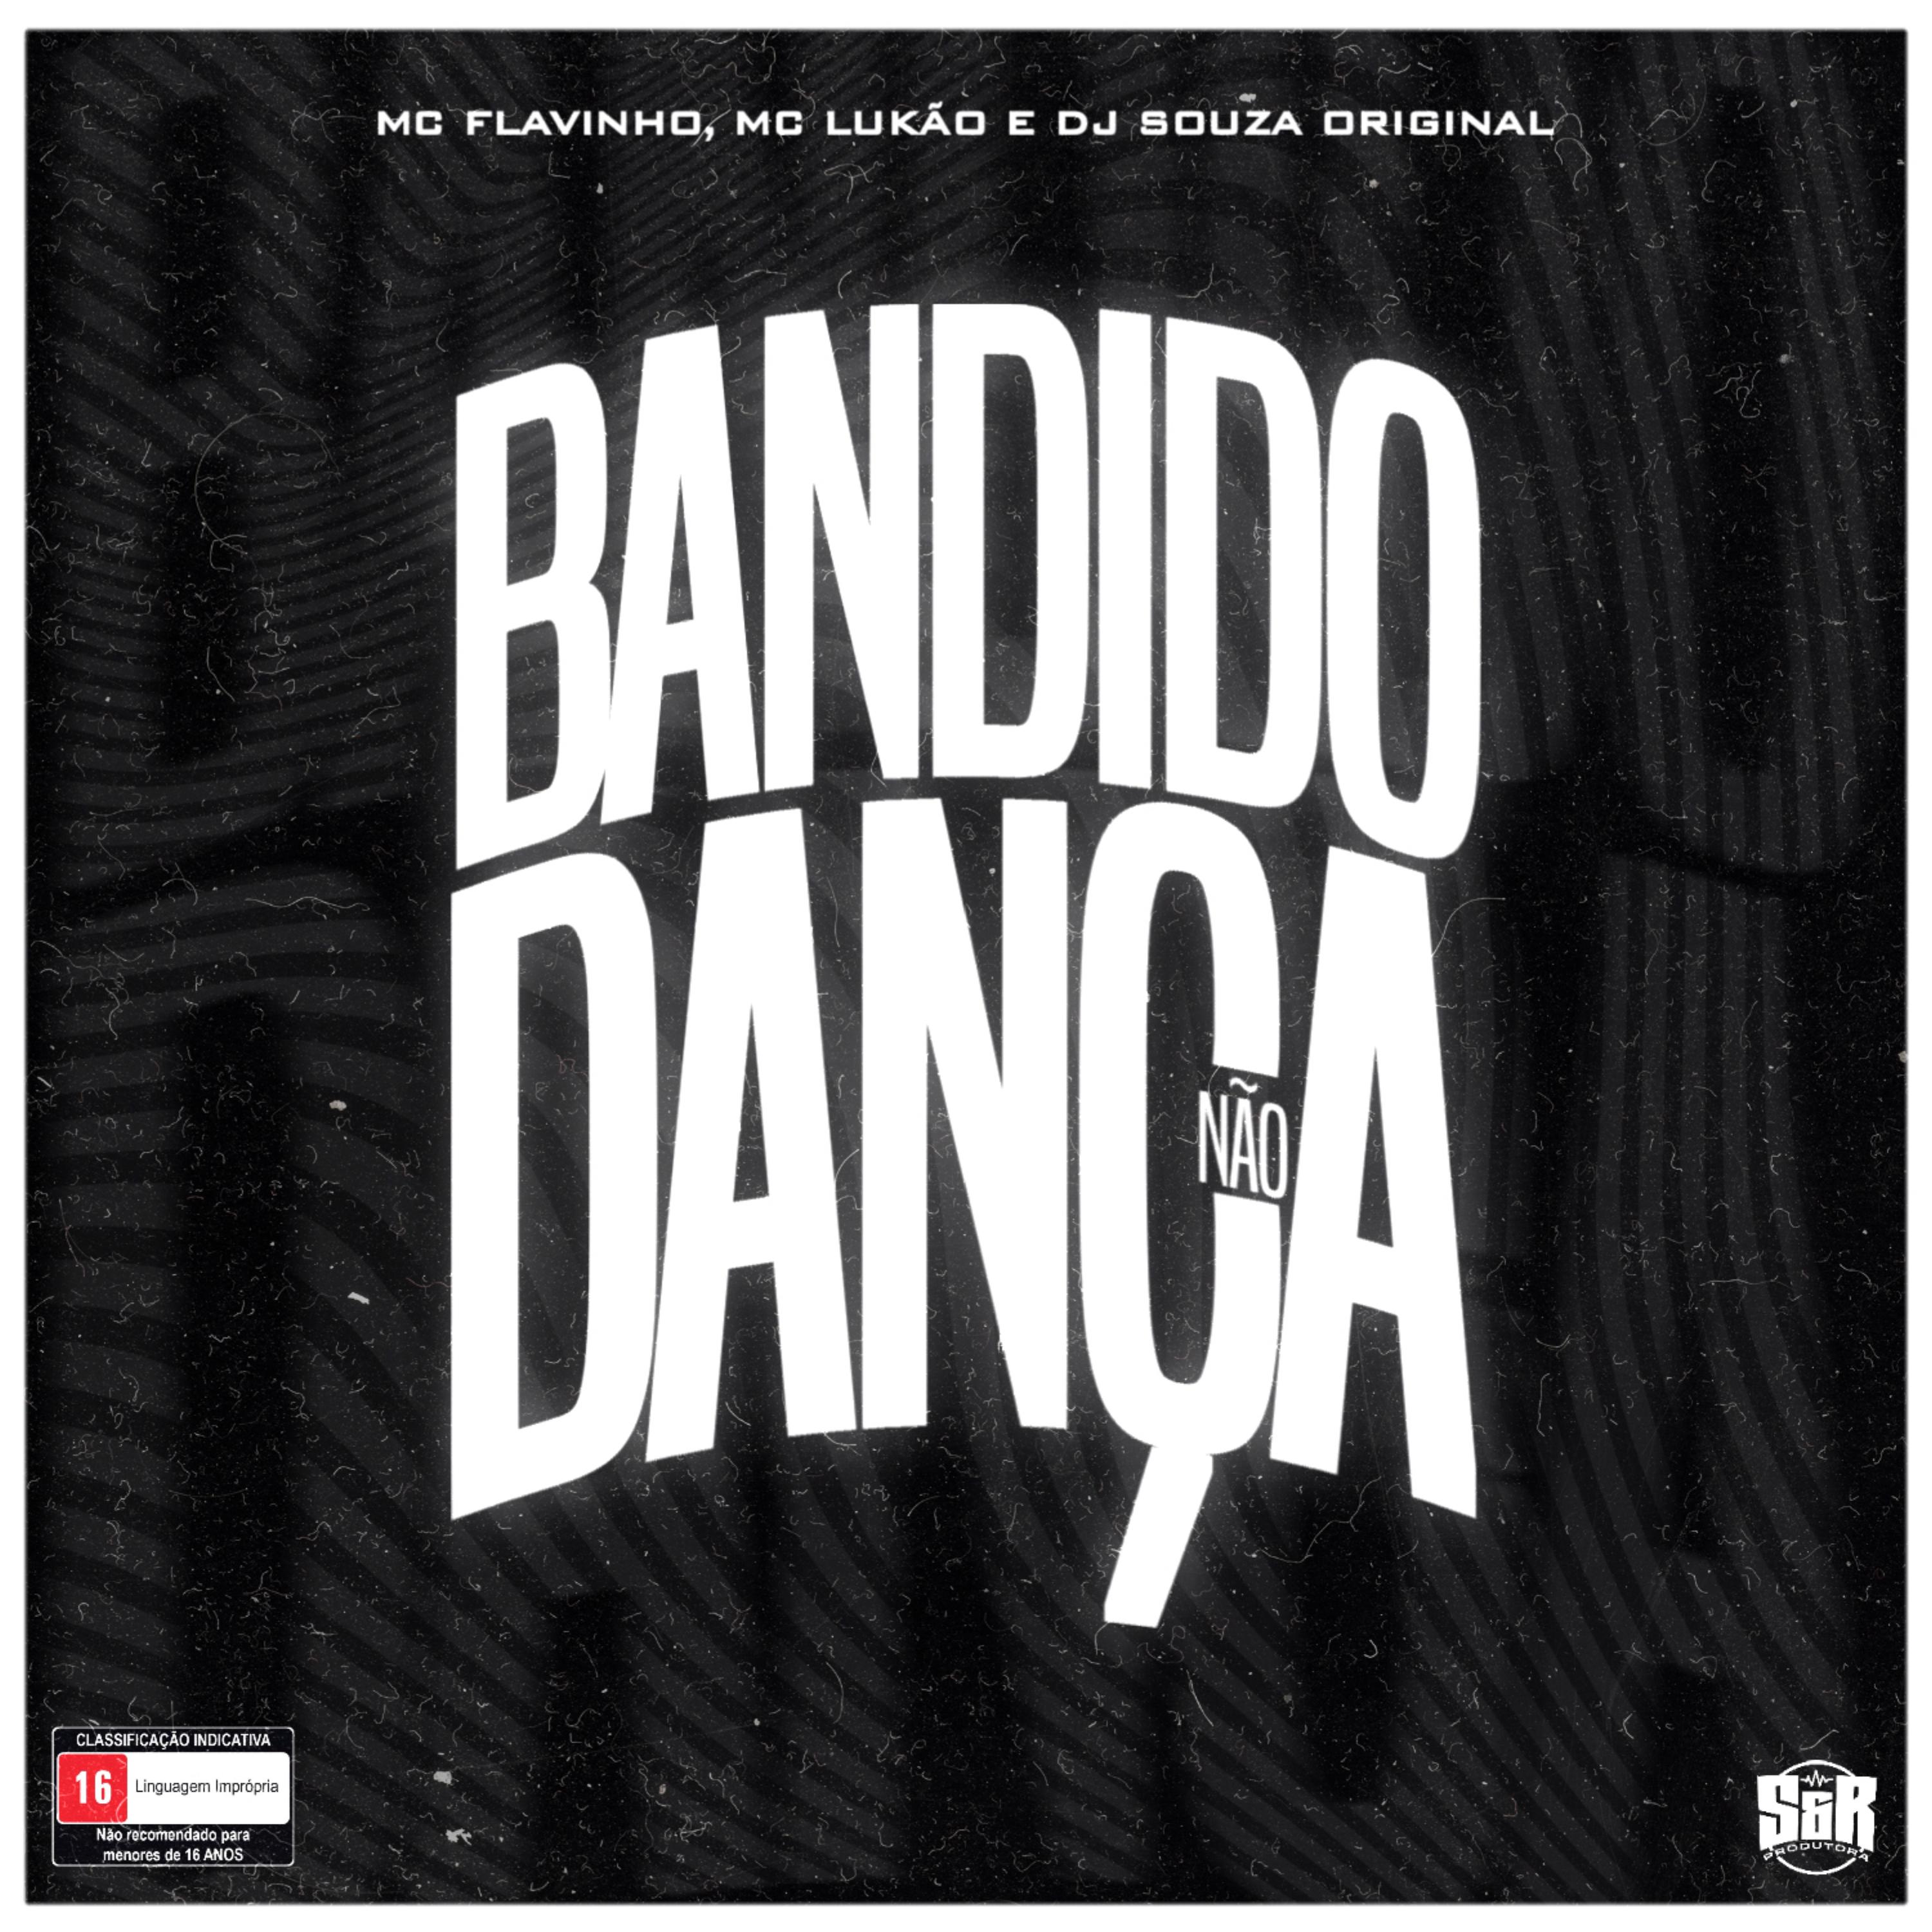 Постер альбома Bandido Não Dança